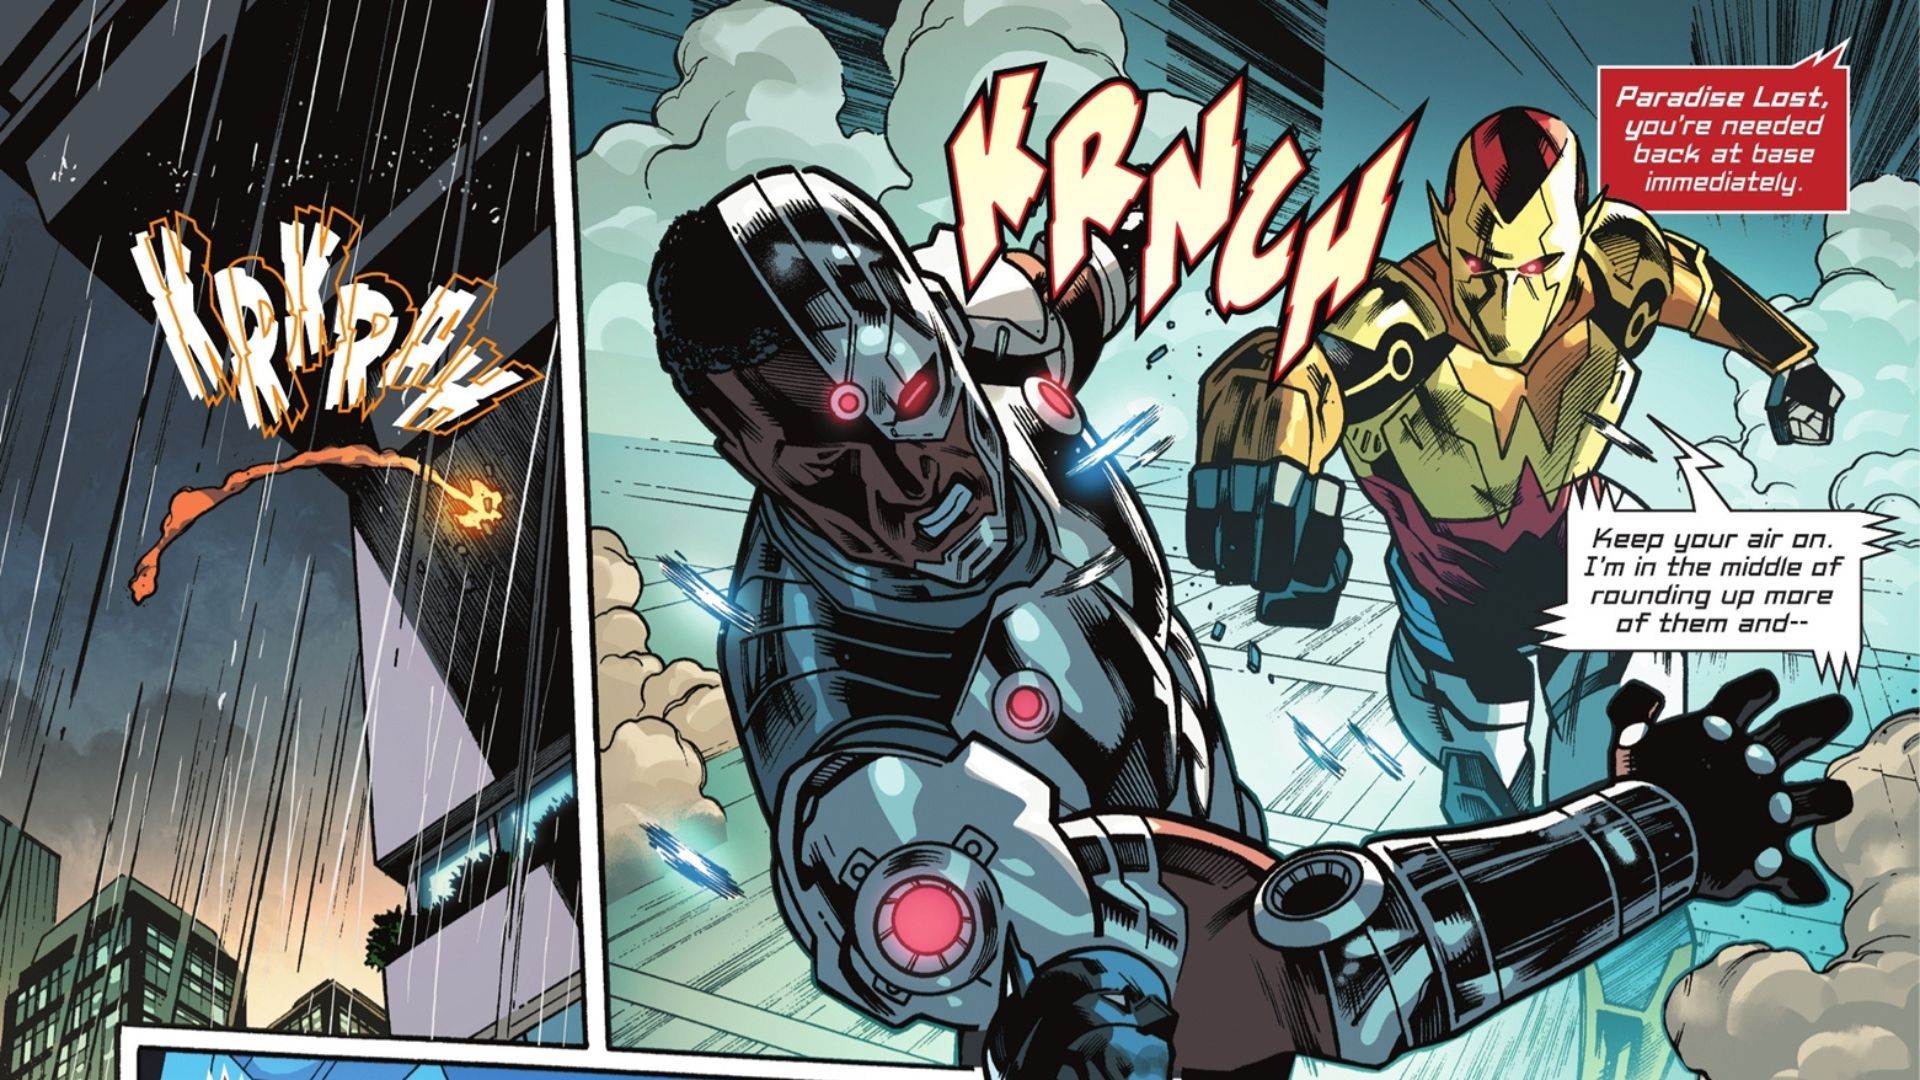 Panel de cómic: Amazo Paradise Lost golpea a Cyborg.